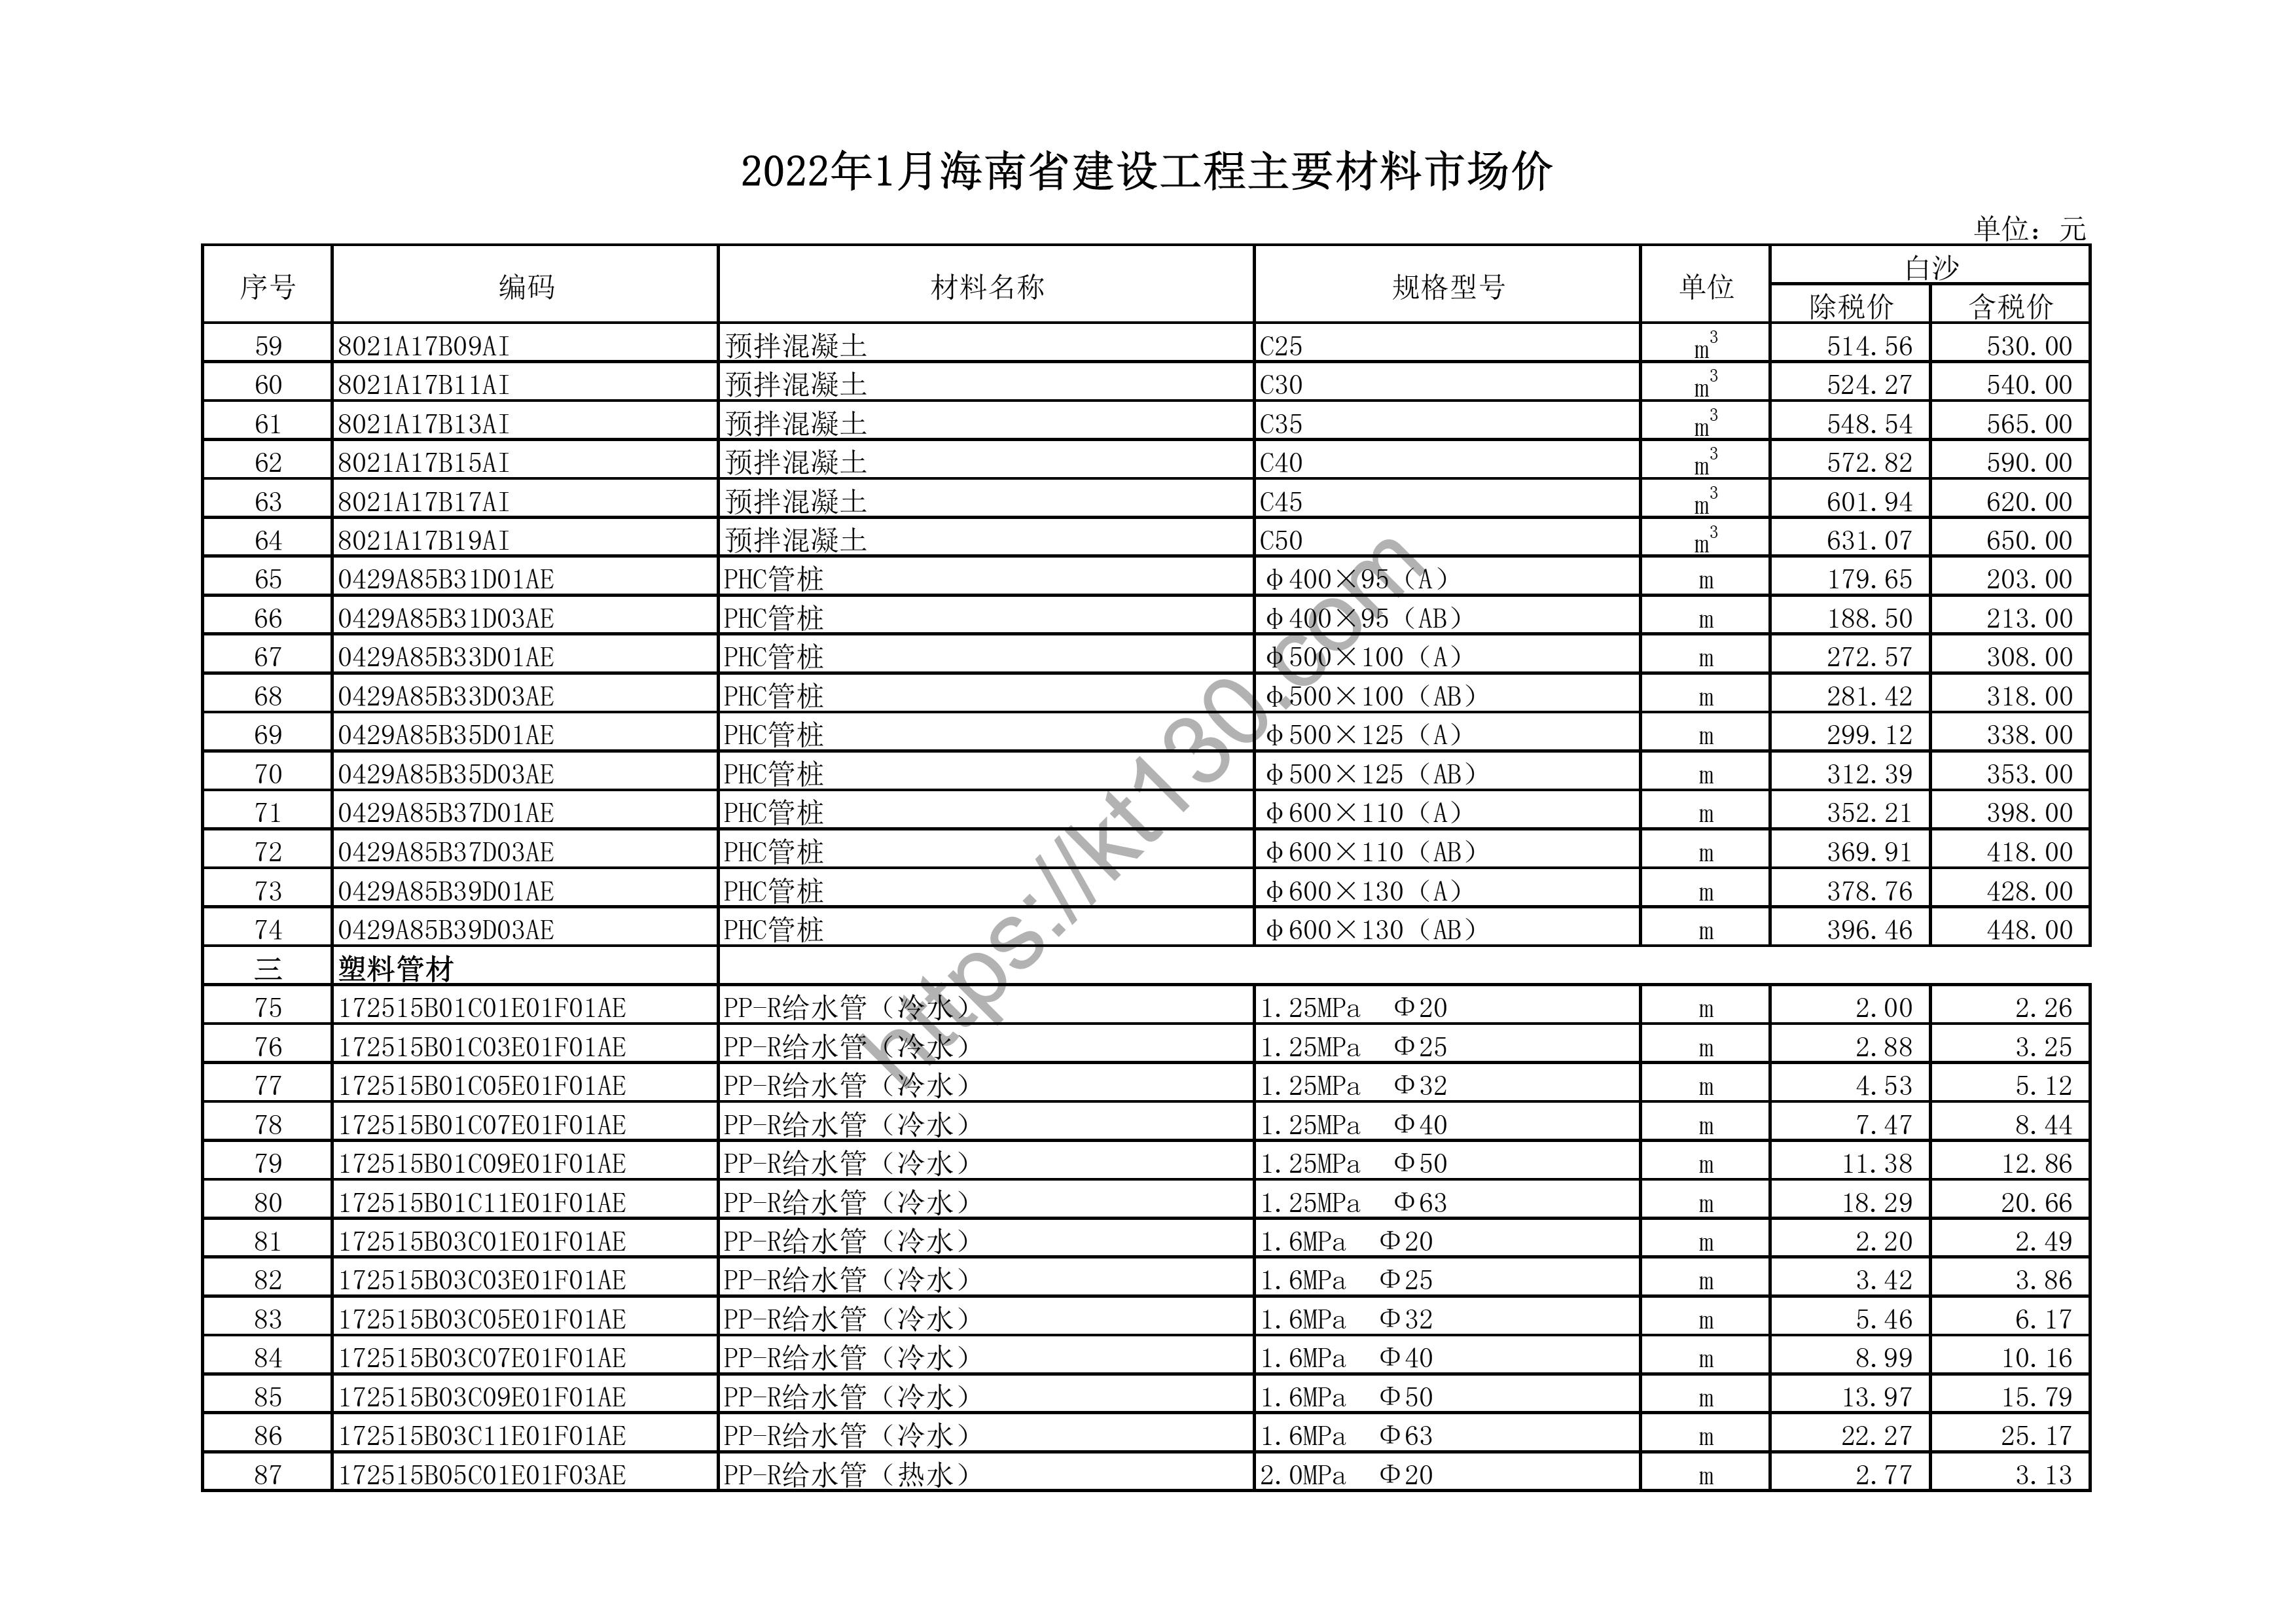 海南省2022年1月建筑材料价_冷热水管_43735